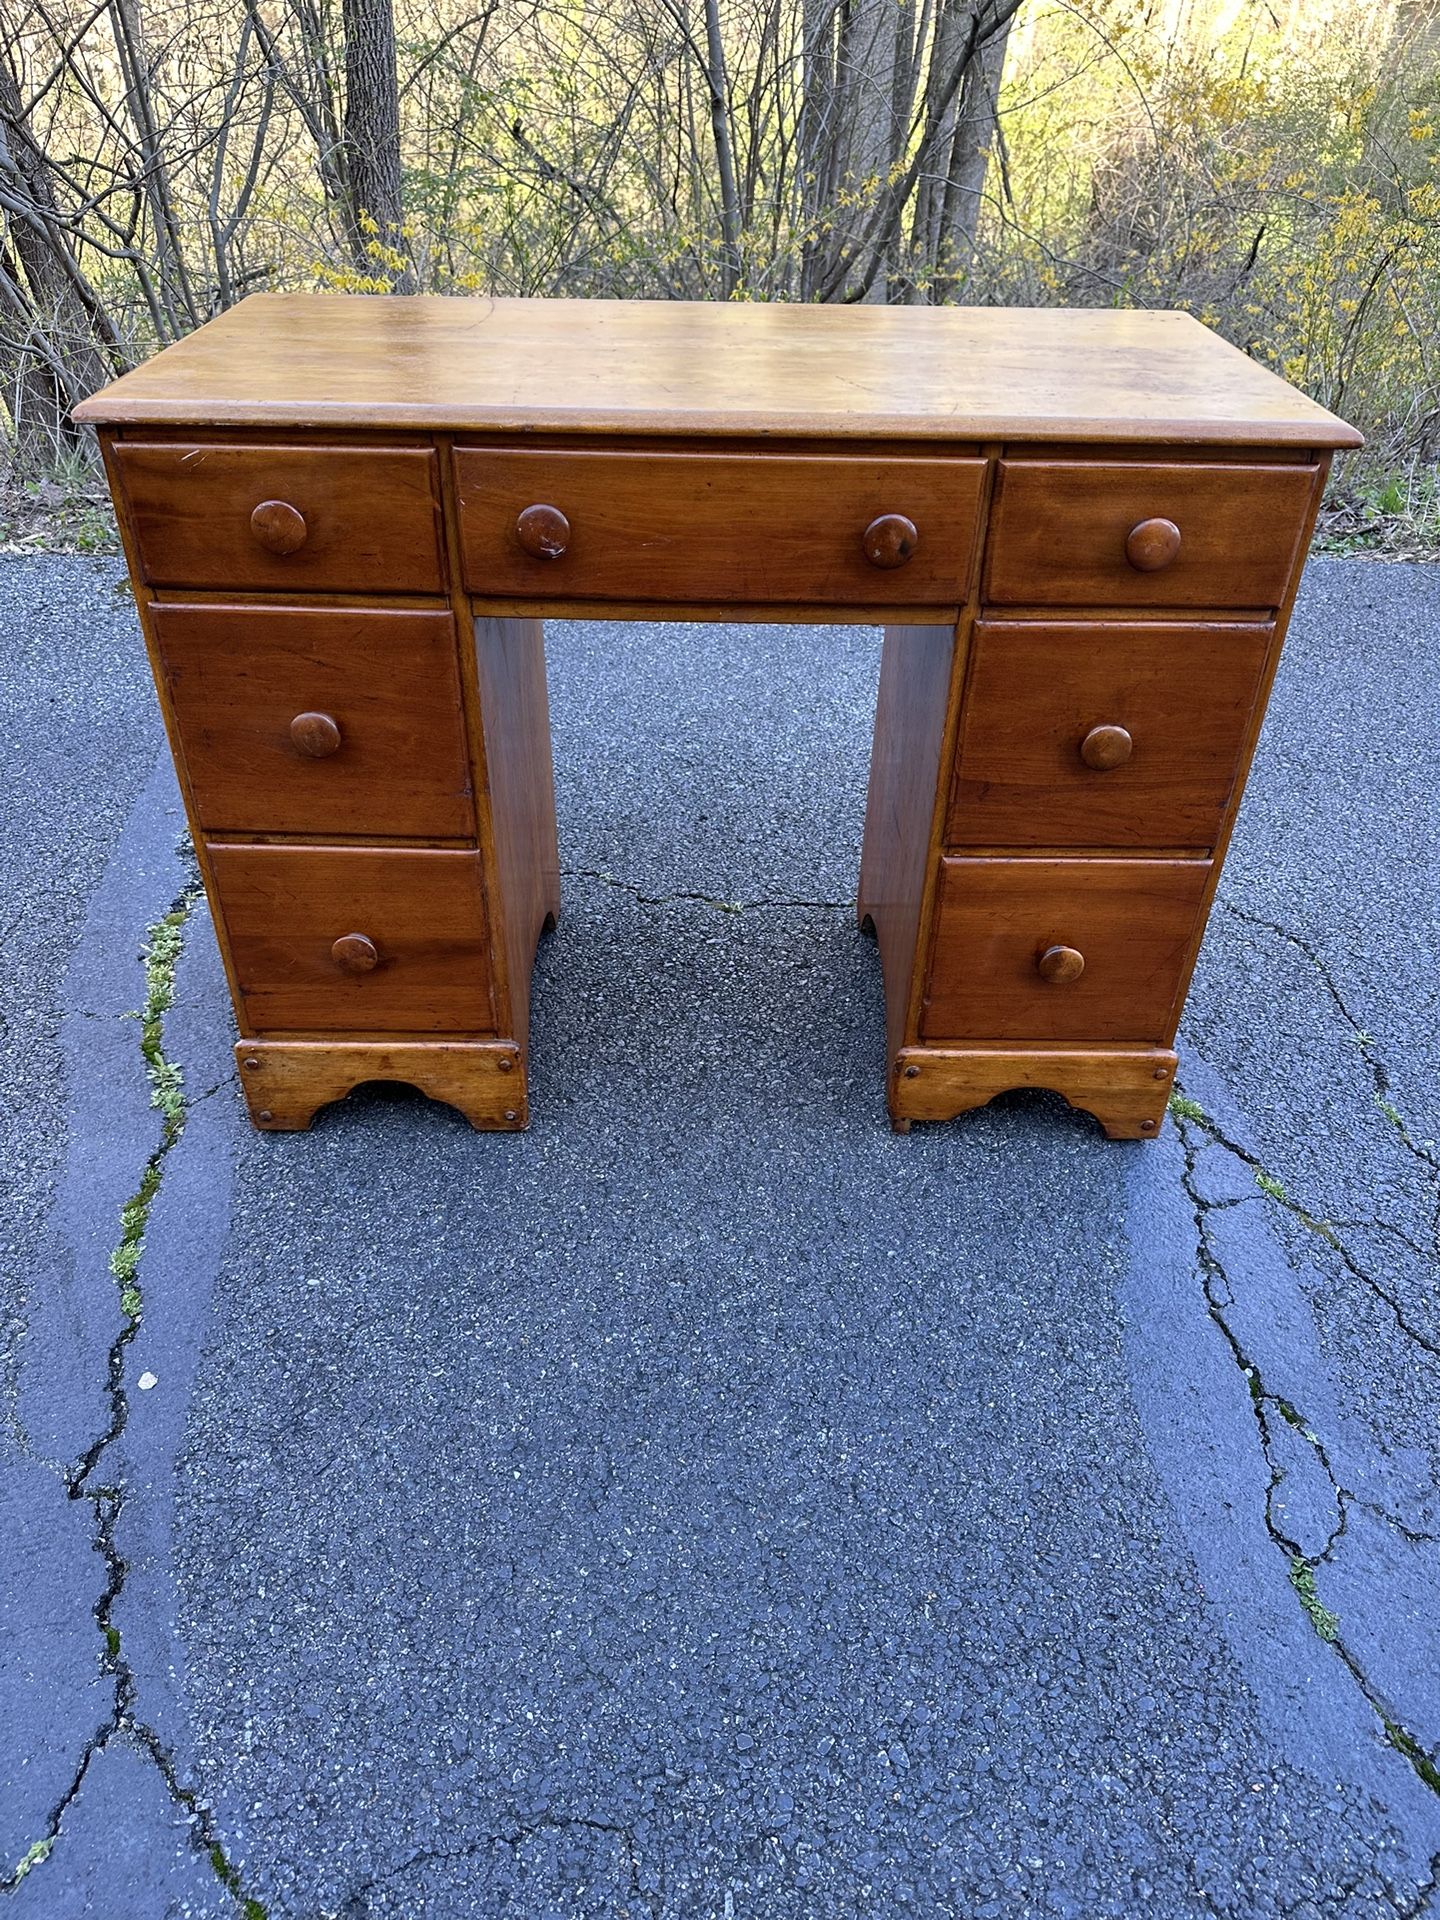 Vintage Wooden Desk - (7) Dovetail Drawers - Furniture - Home Decor